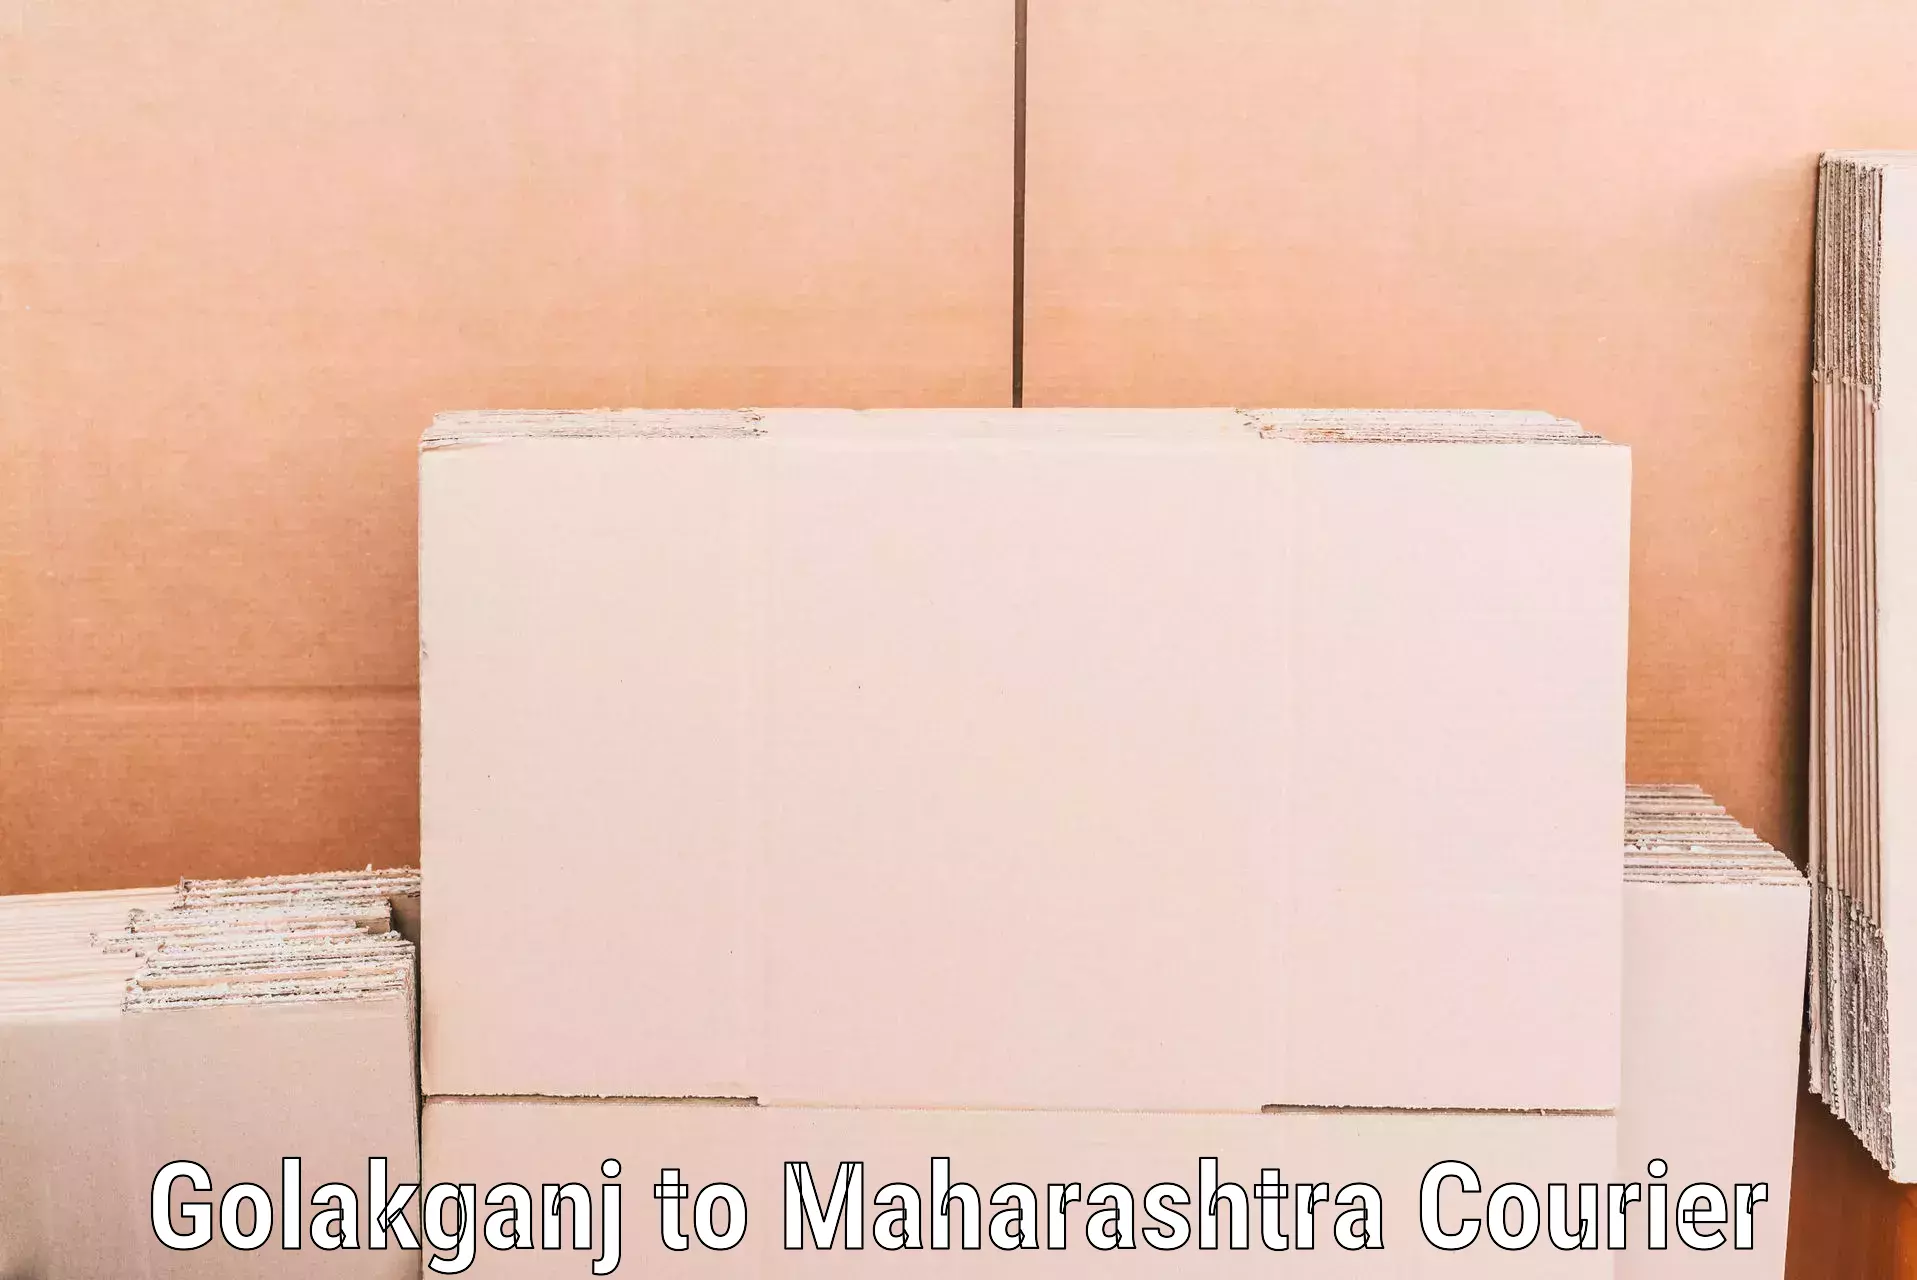 Home moving experts Golakganj to Maharashtra